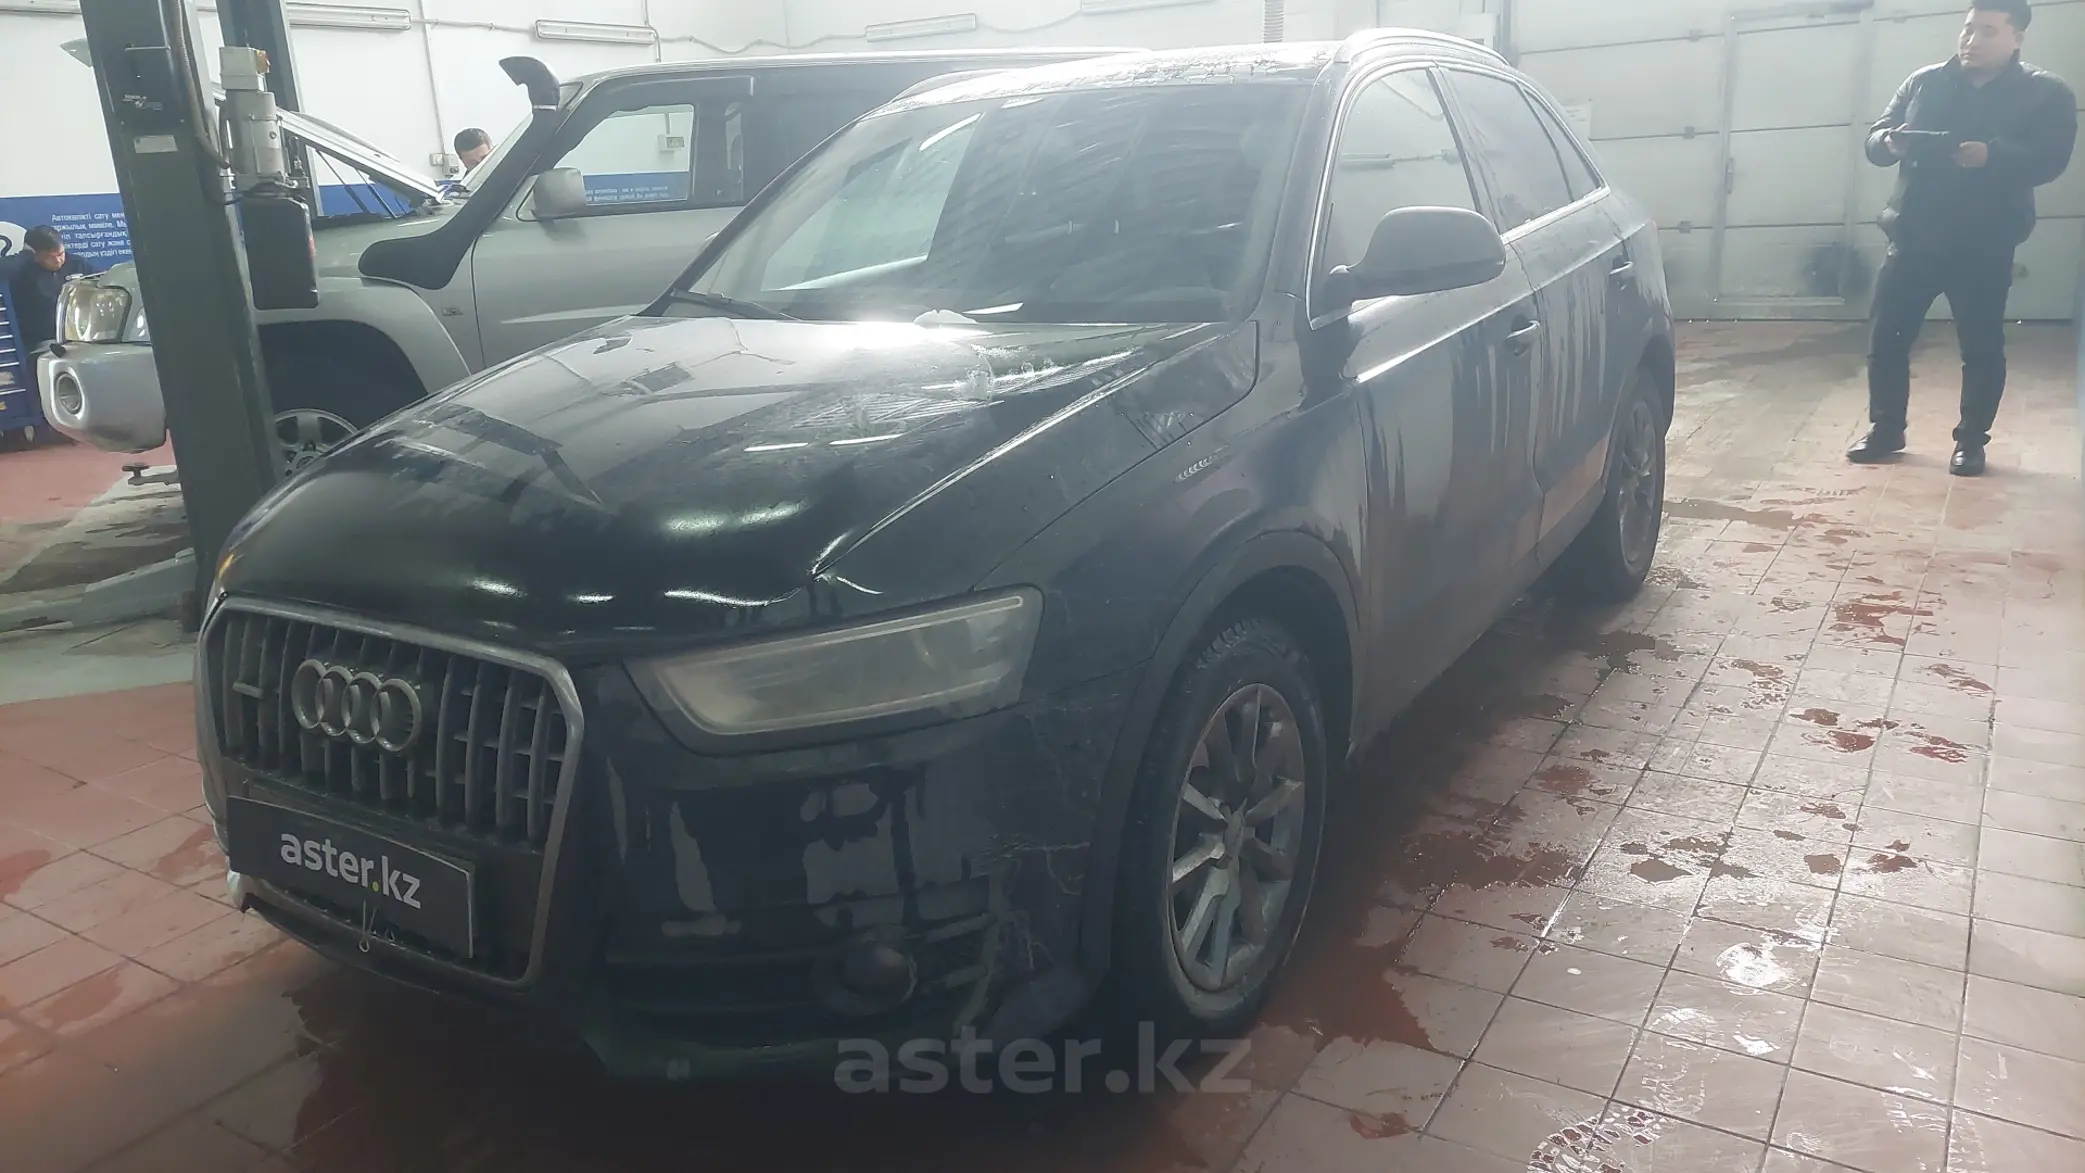 Audi Q3 2014